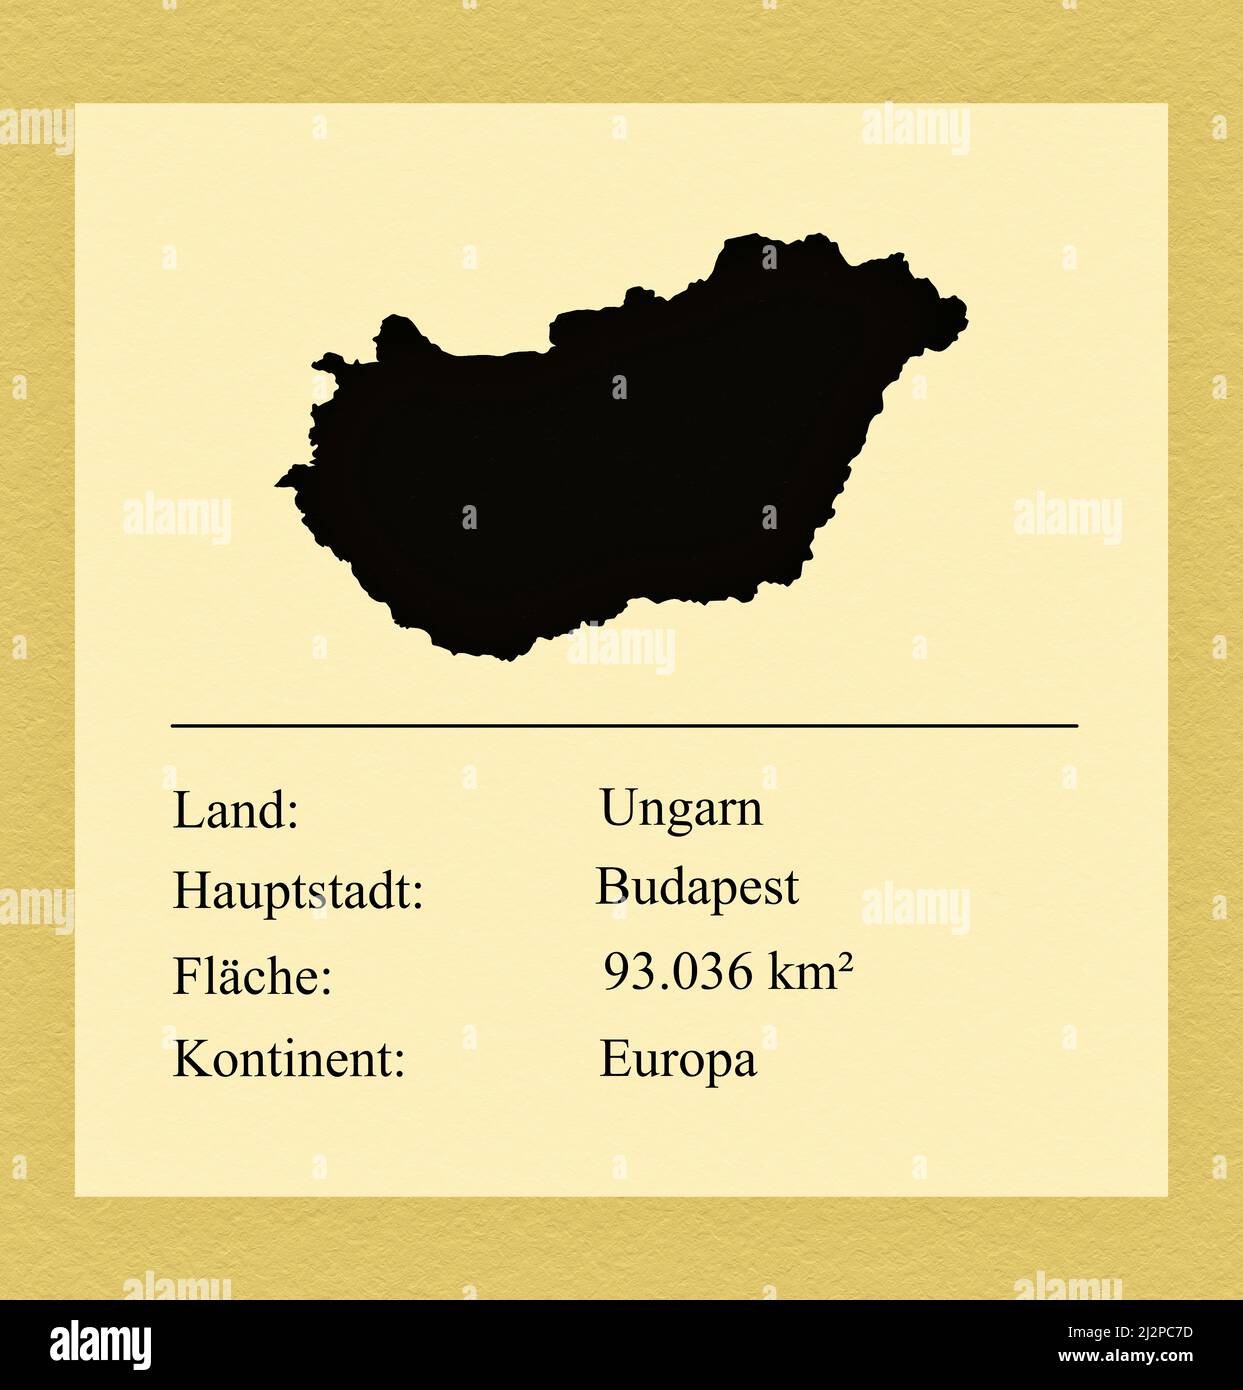 Umrisse des Landes Ungarn, darunter ein kleiner Steckbrief mit Ländernamen, Hauptstadt, Fläche und Kontinent Foto Stock